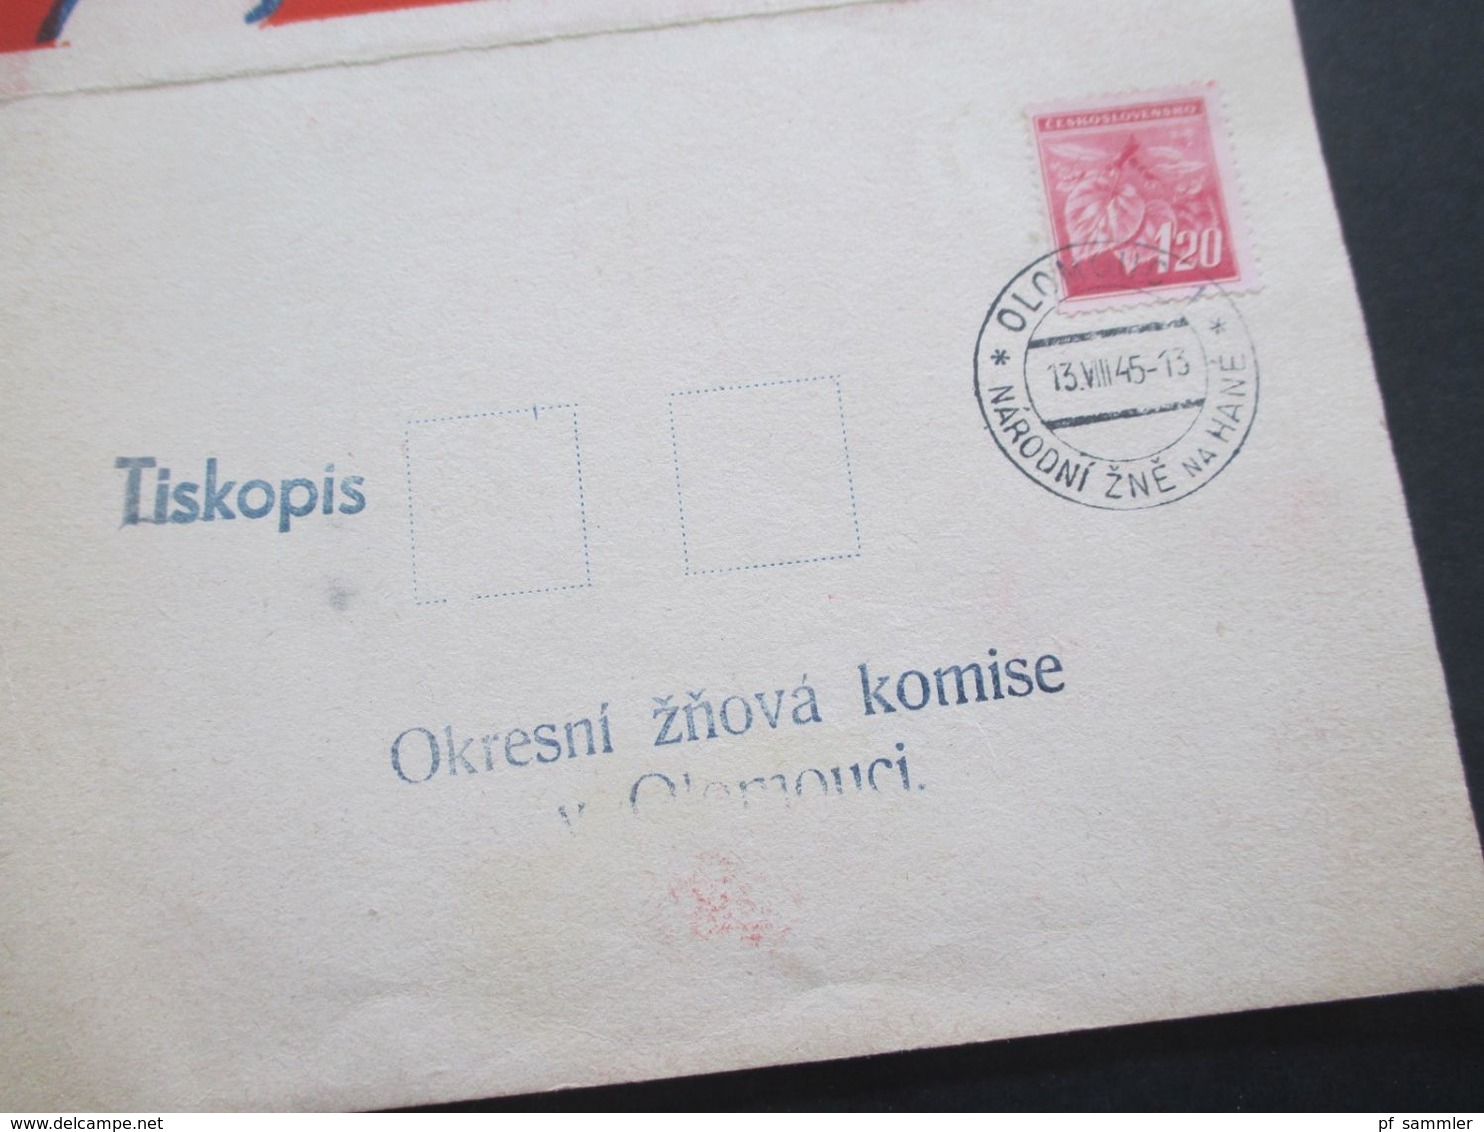 CSSR 13.8.1945 Postkarte / Doppelkarte Dozata Na Hane Prvni Narodni Olomouci - Storia Postale